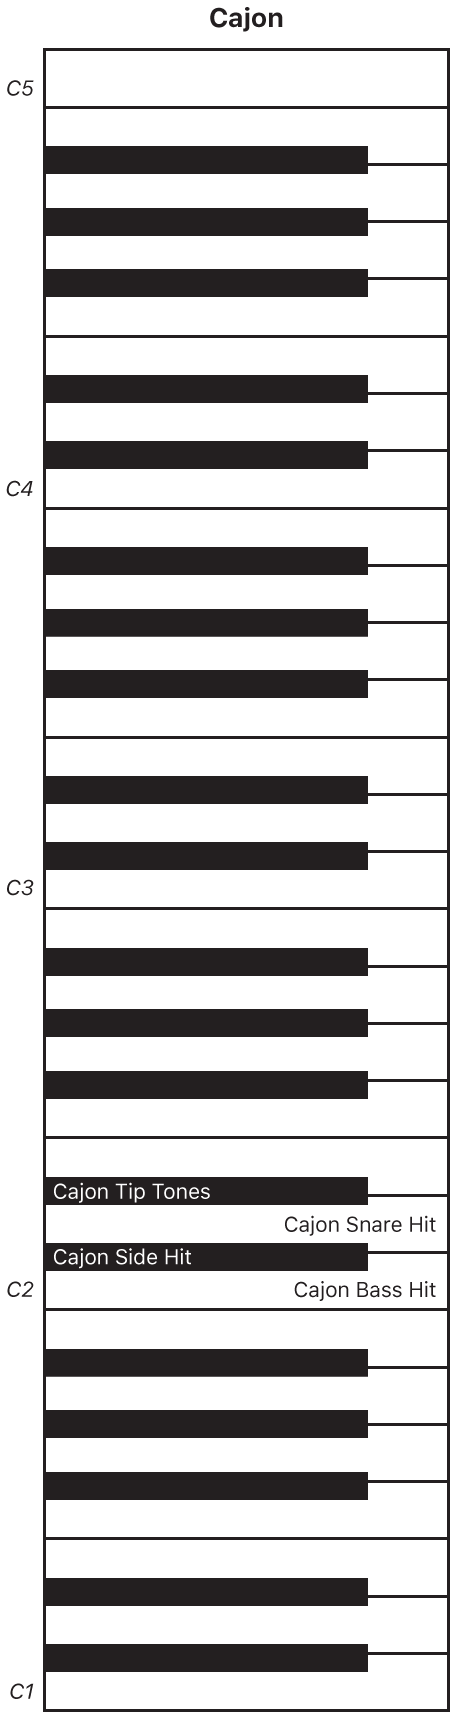 Figure. Mappage de clavier de performance du cajón.